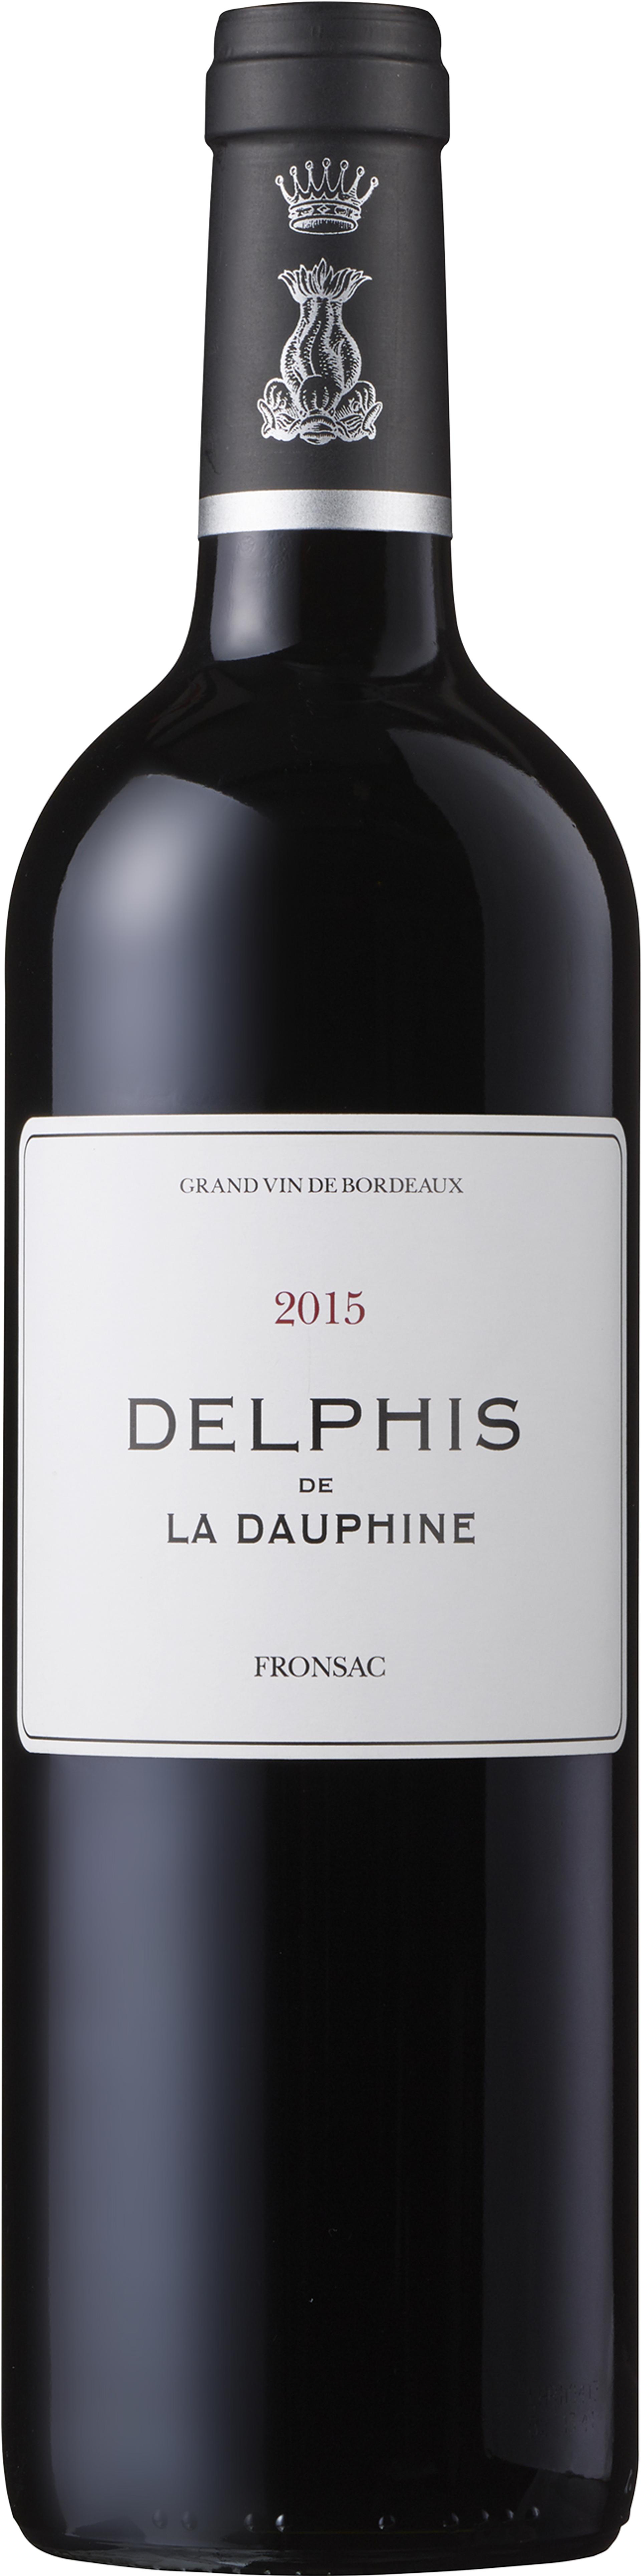 Delphis de La Dauphine